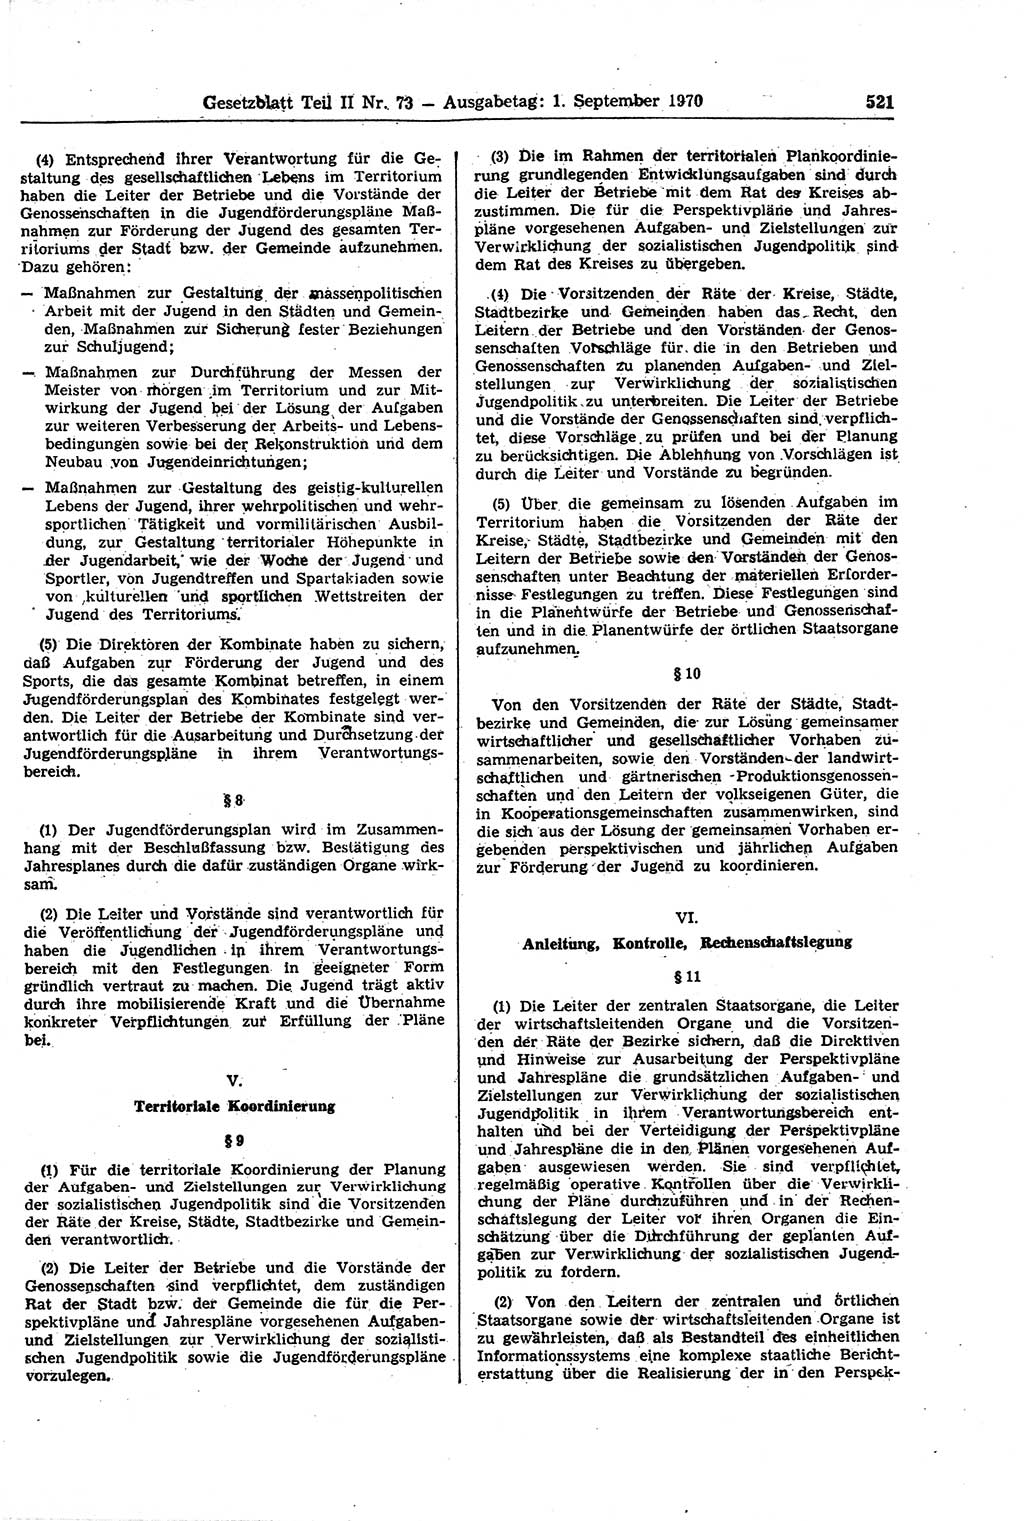 Gesetzblatt (GBl.) der Deutschen Demokratischen Republik (DDR) Teil ⅠⅠ 1970, Seite 521 (GBl. DDR ⅠⅠ 1970, S. 521)